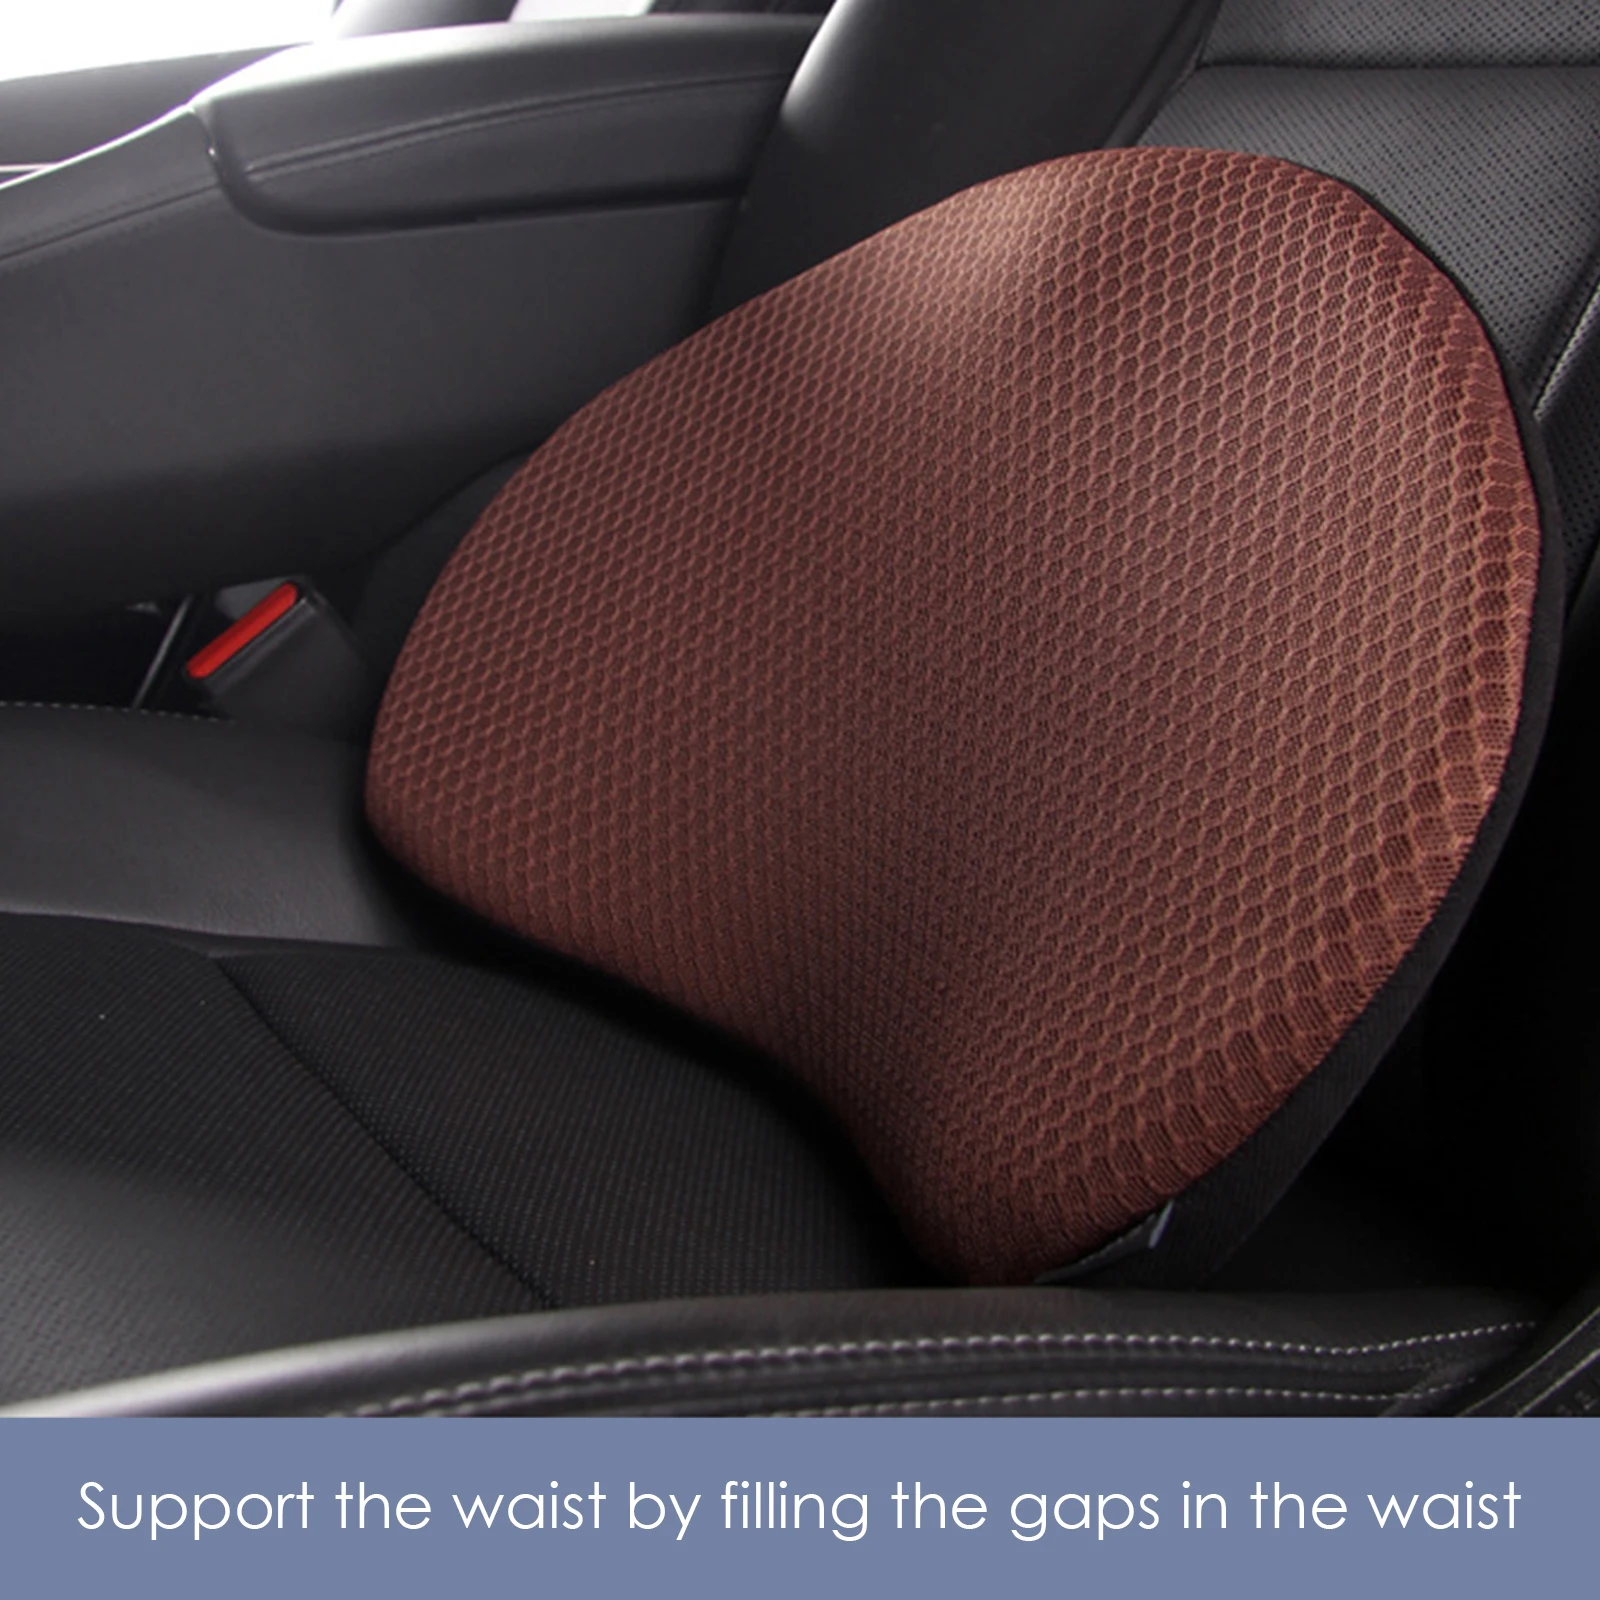 https://ae01.alicdn.com/kf/S9c2642f15b2c4d4da983af0cfc02a458T/Car-Seat-Cushion-Driver-Seat-Memory-Foam-Cushion-Cushion-Pillow-Cushion-Protection-Waist-Breathable-Increase-Hip.jpg